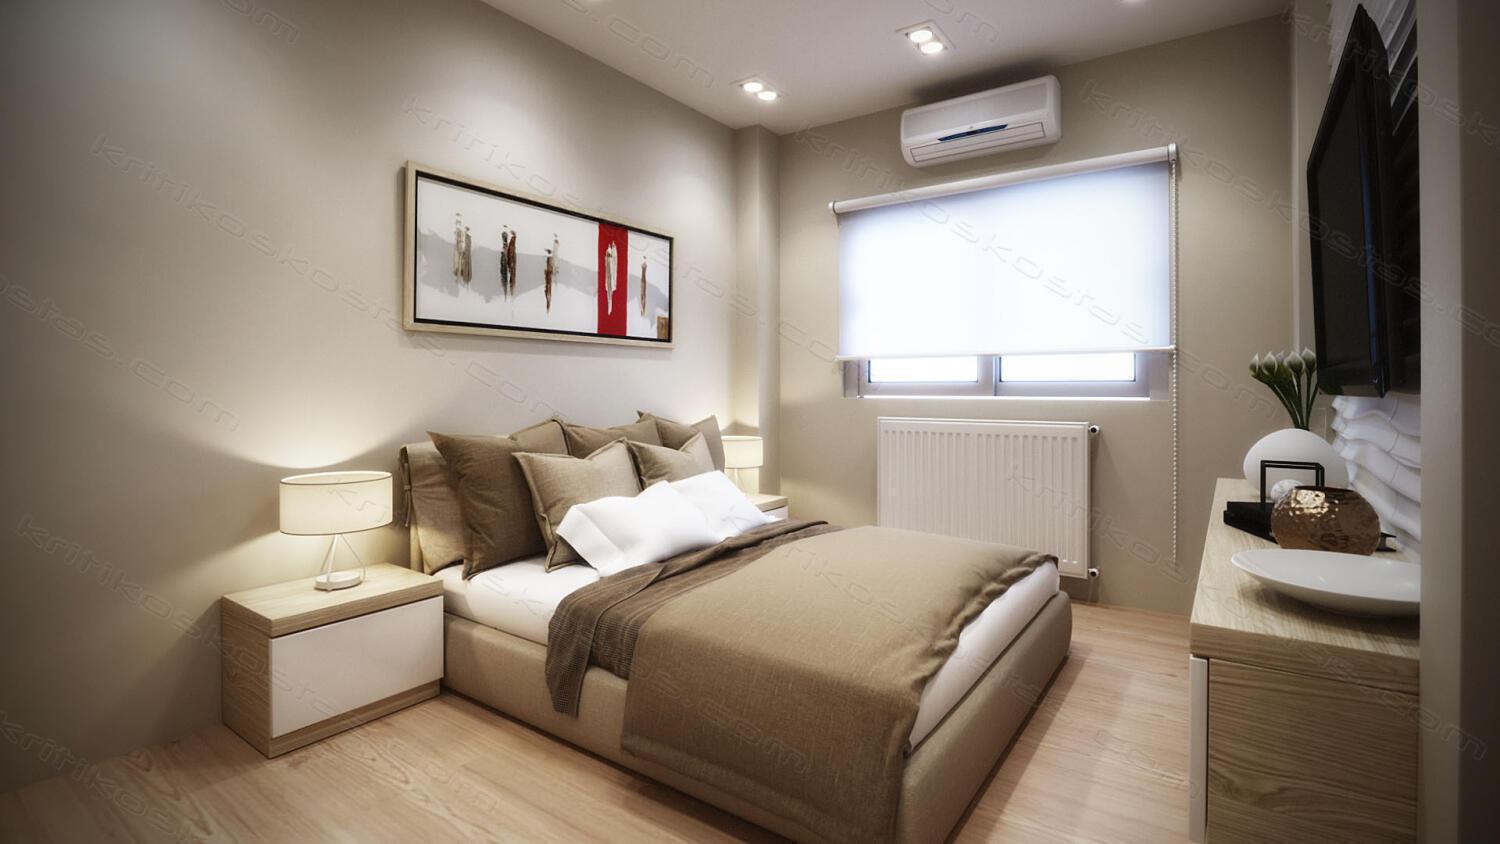 190522_3d-bedroom-rendering-interior-design-002